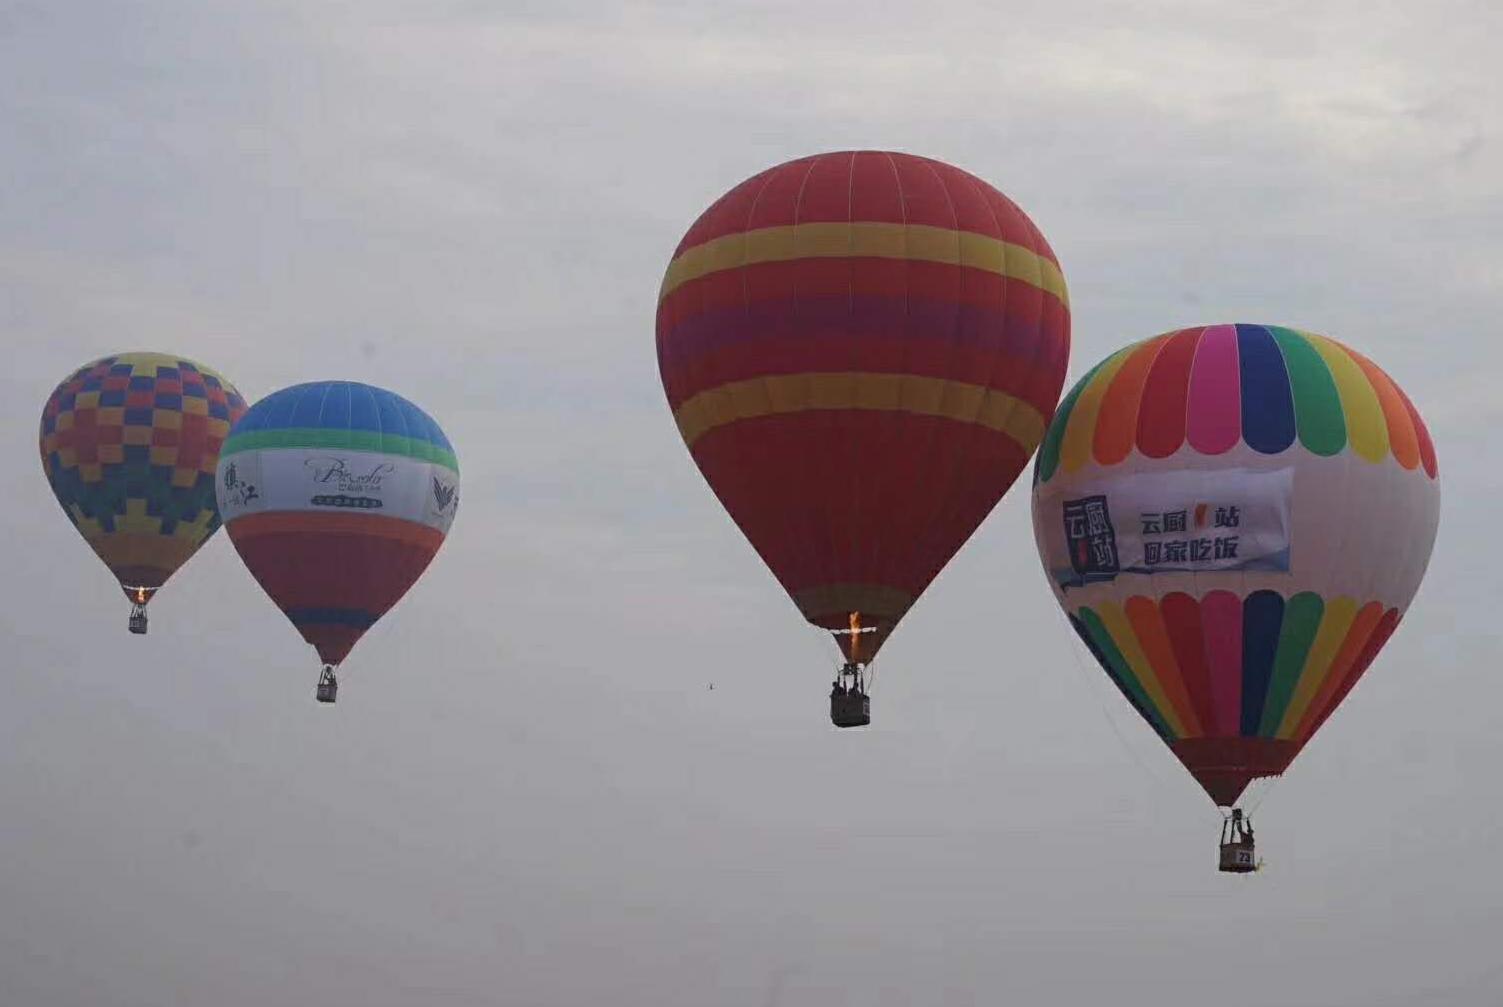 白鹿仓携中国最大热气球嘉年华 邀您共享品牌盛事